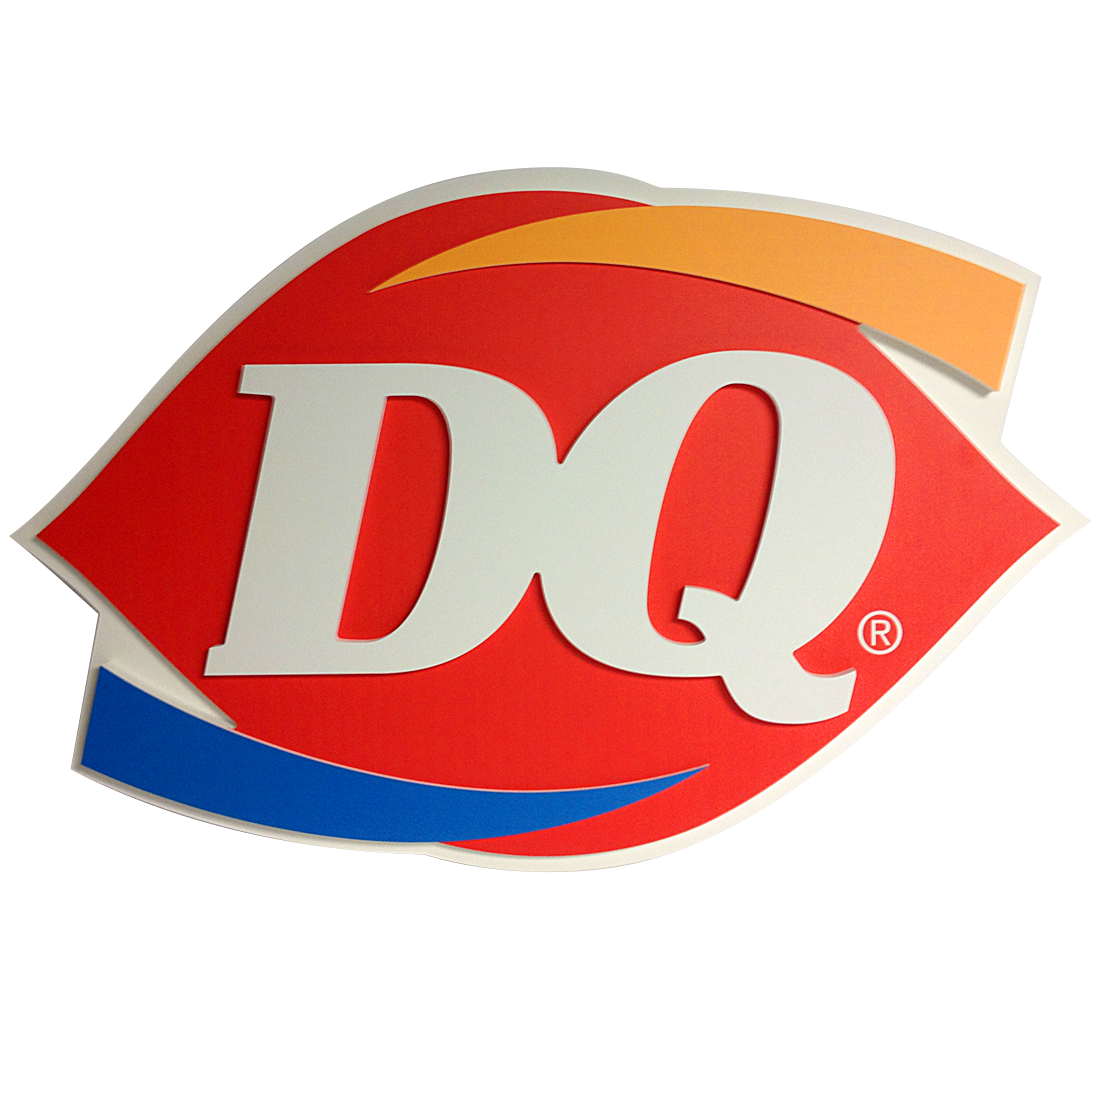 Dairy queen. Dairy Queen логотип. DQ логотип. Логотип кафе быстрого питания. Логотип молочная Королева.